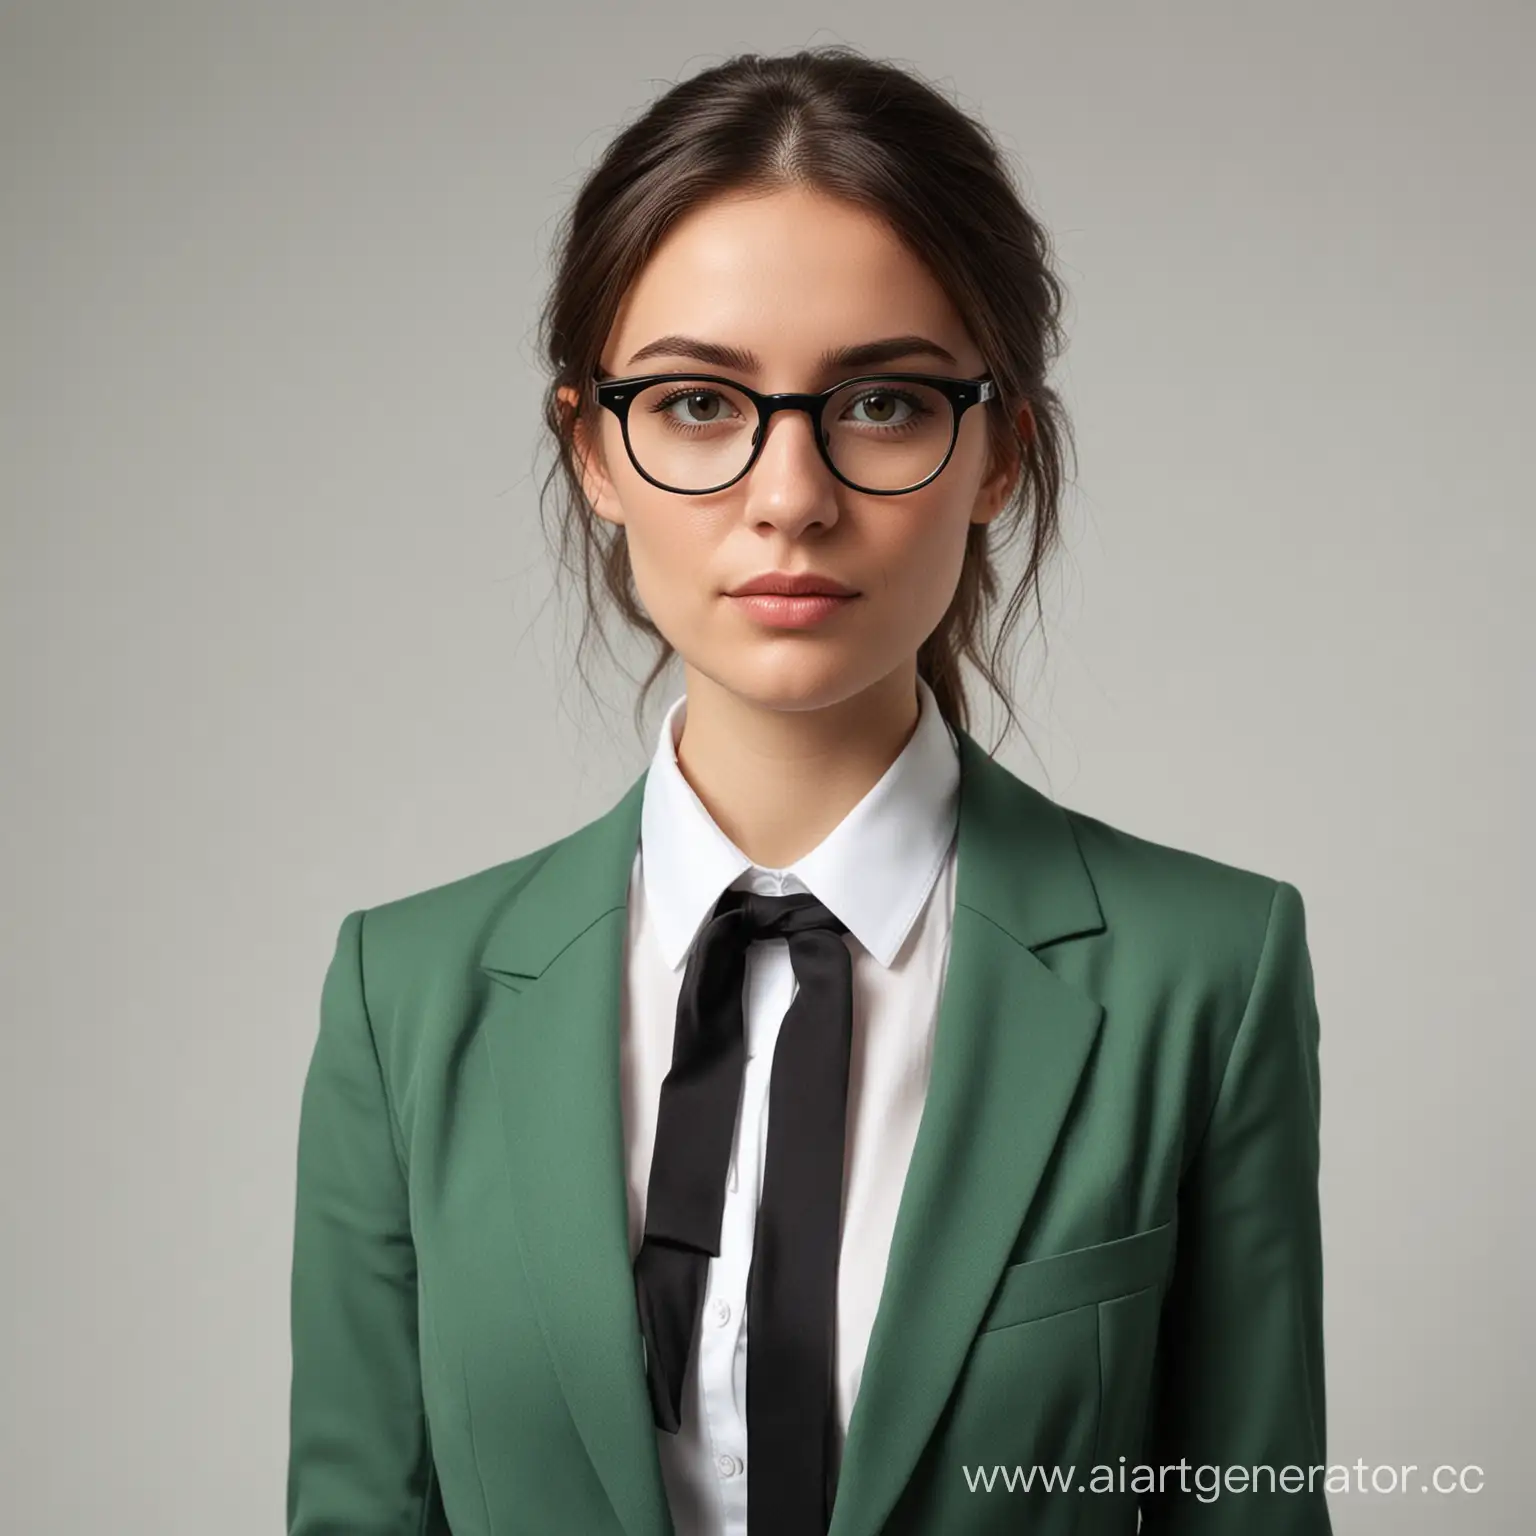 Юрист - девушка в очках, одетая в темно-зеленый костюм с белой рубашкой и черным галстуком
Стоит на полностью белом фоне